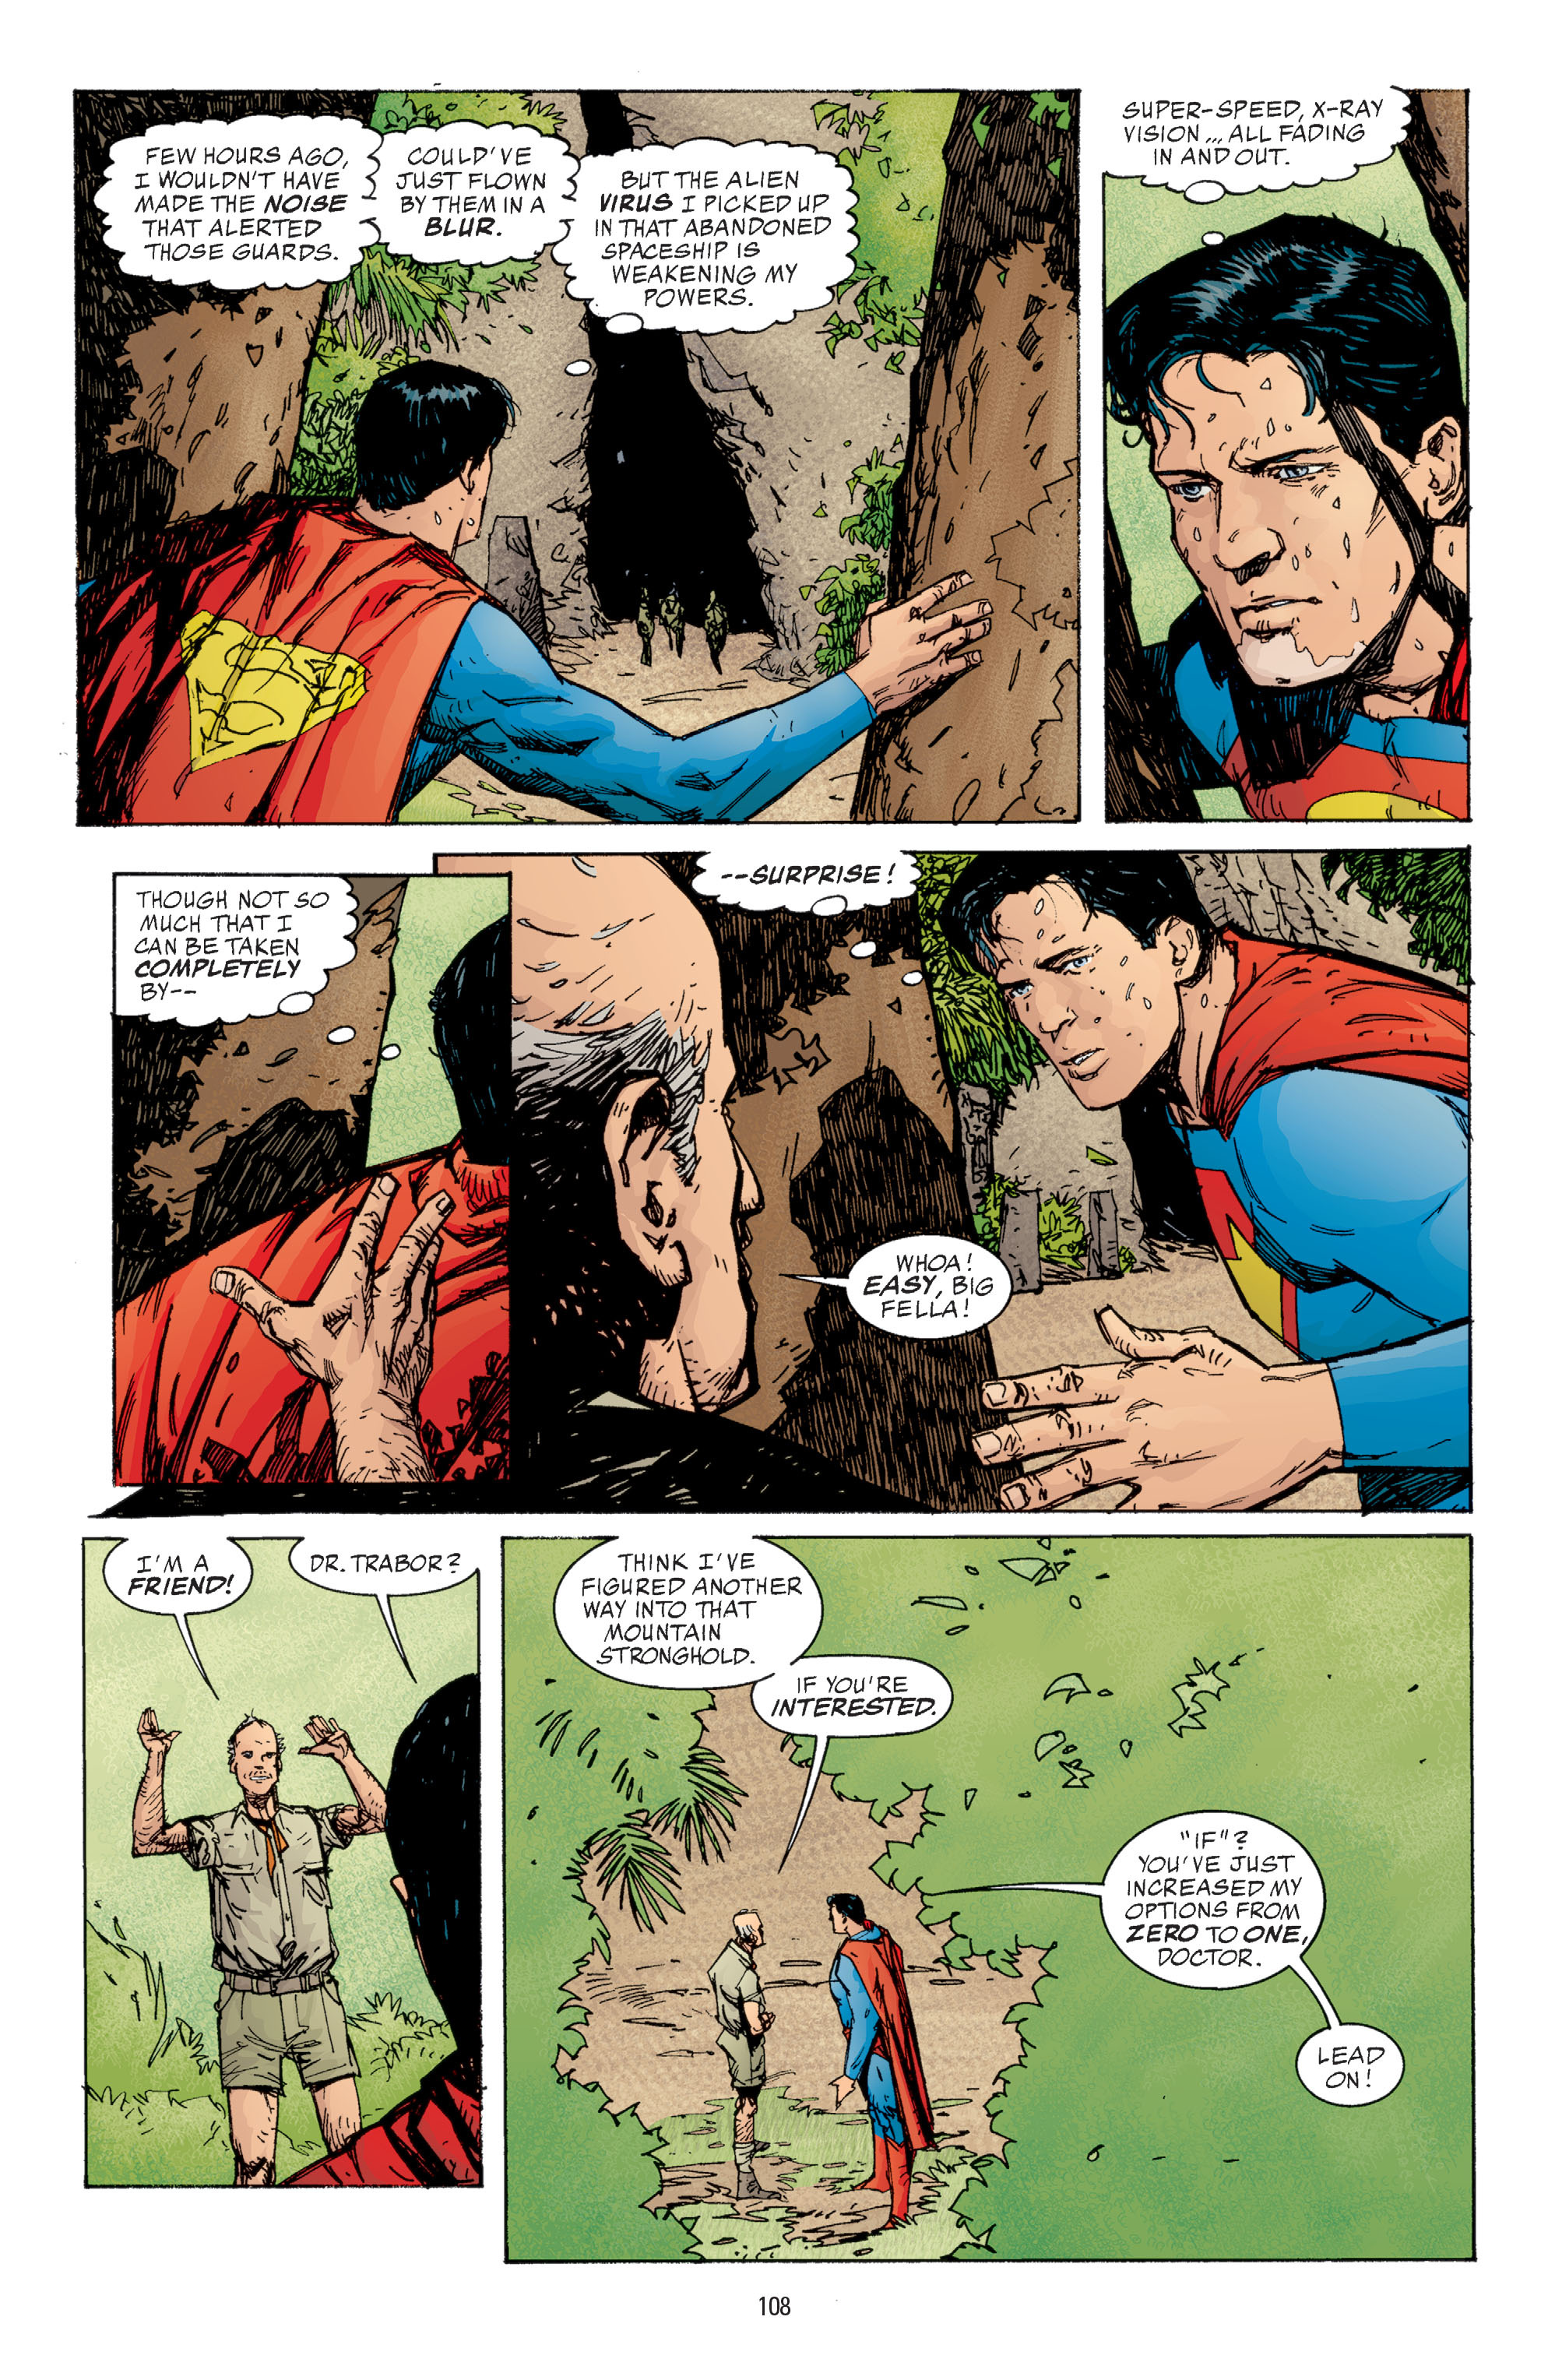 DC Comics/Dark Horse Comics: Justice League Full #1 - English 106